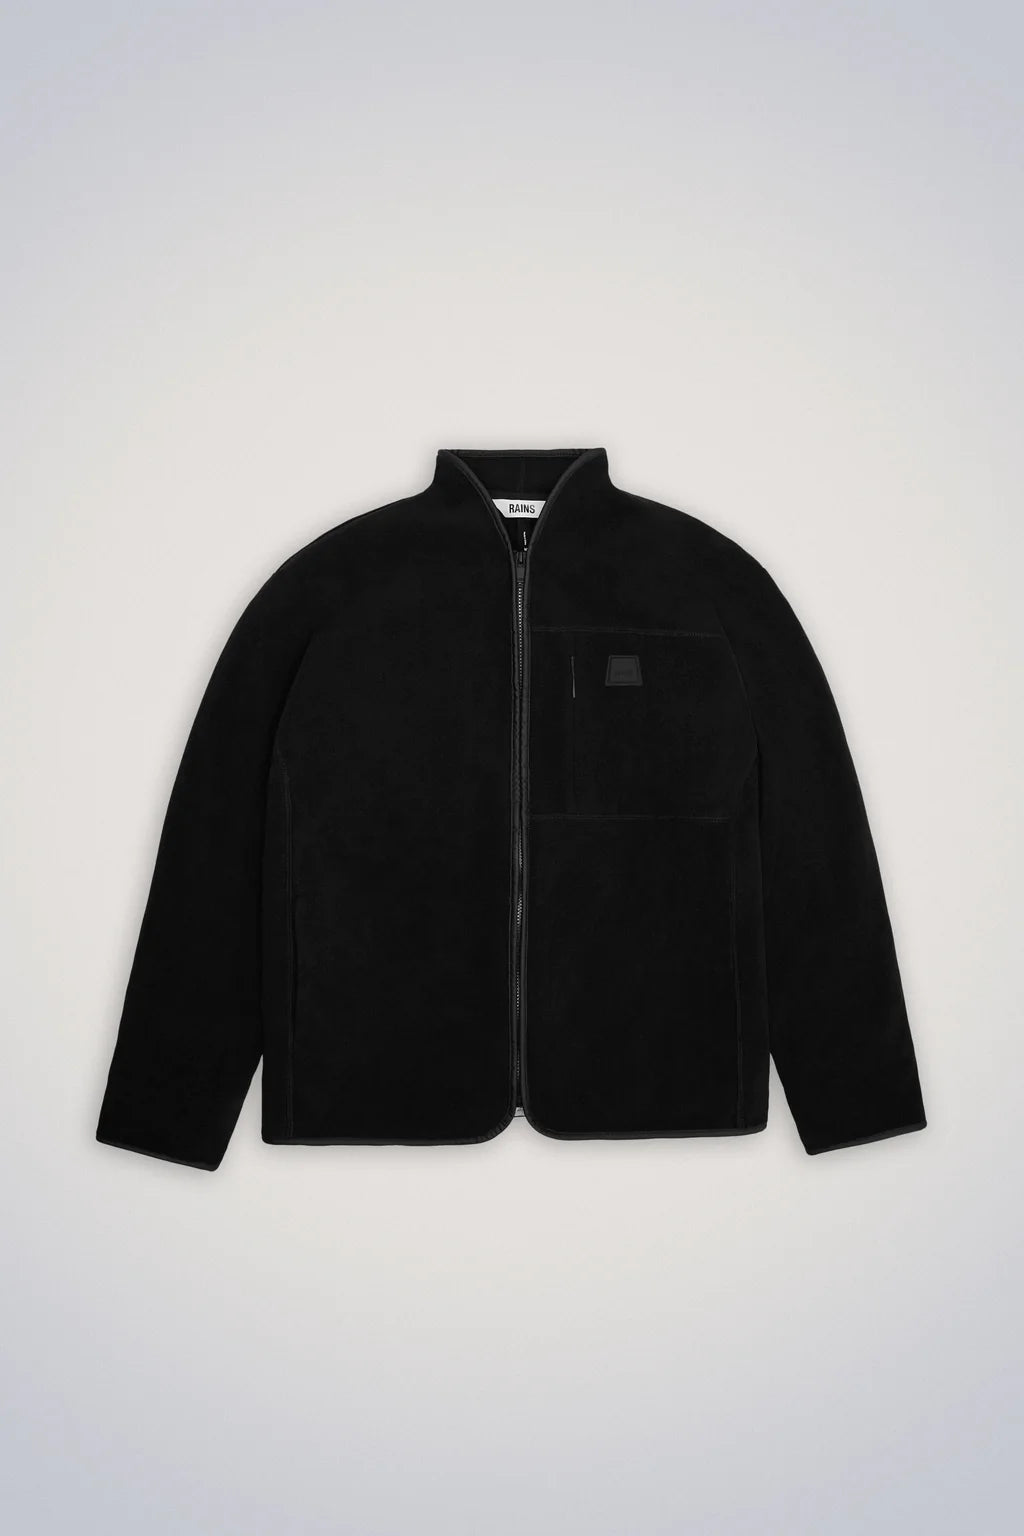 Rains | Durban Short Fleece Jacket - Black